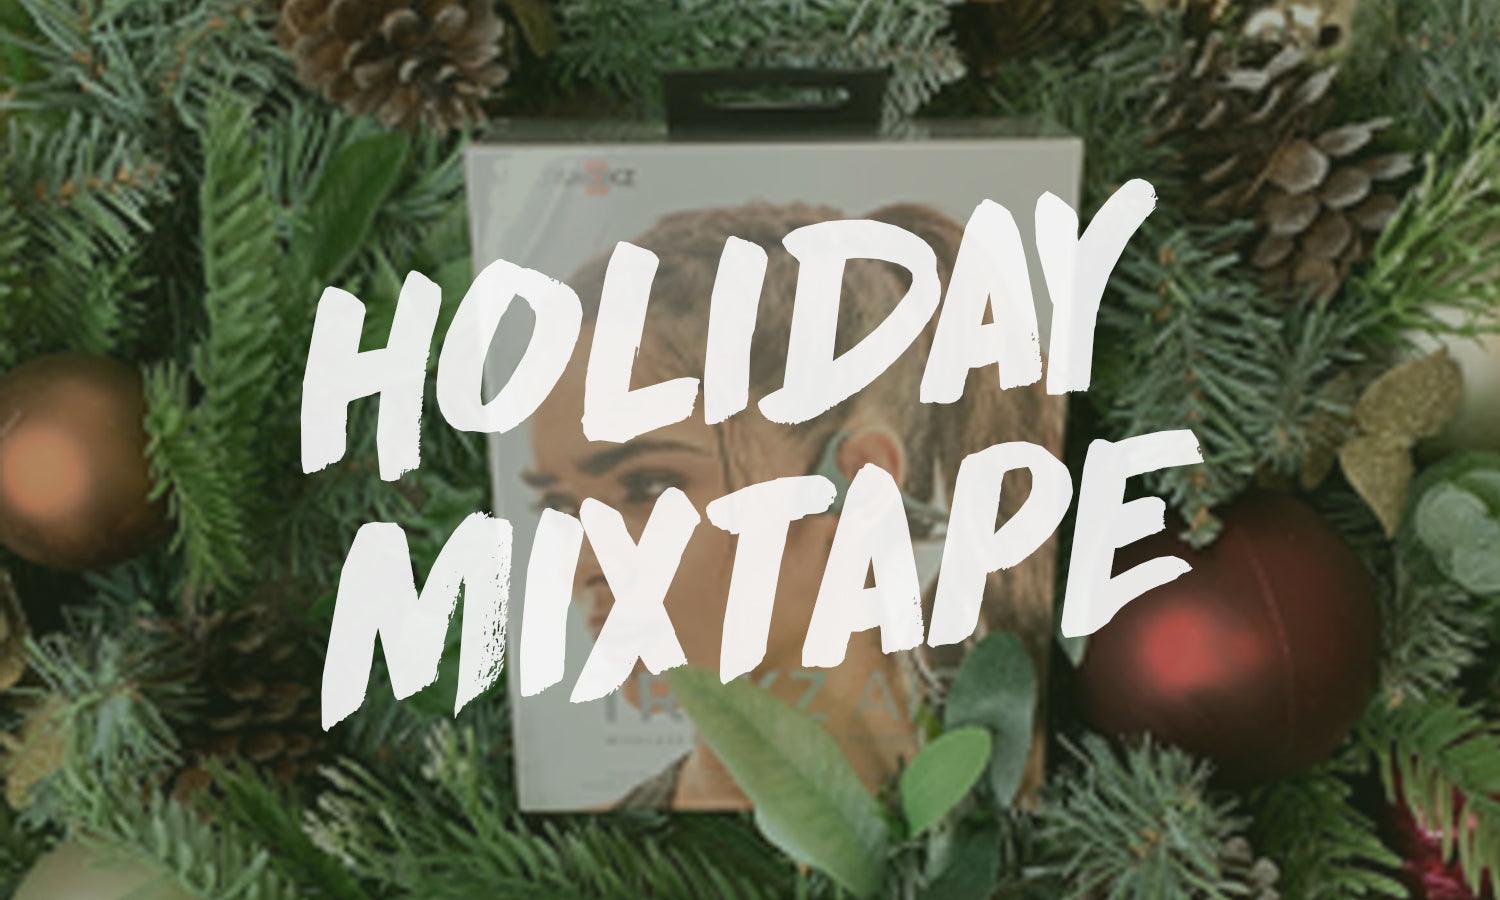 The Holiday Mixtape